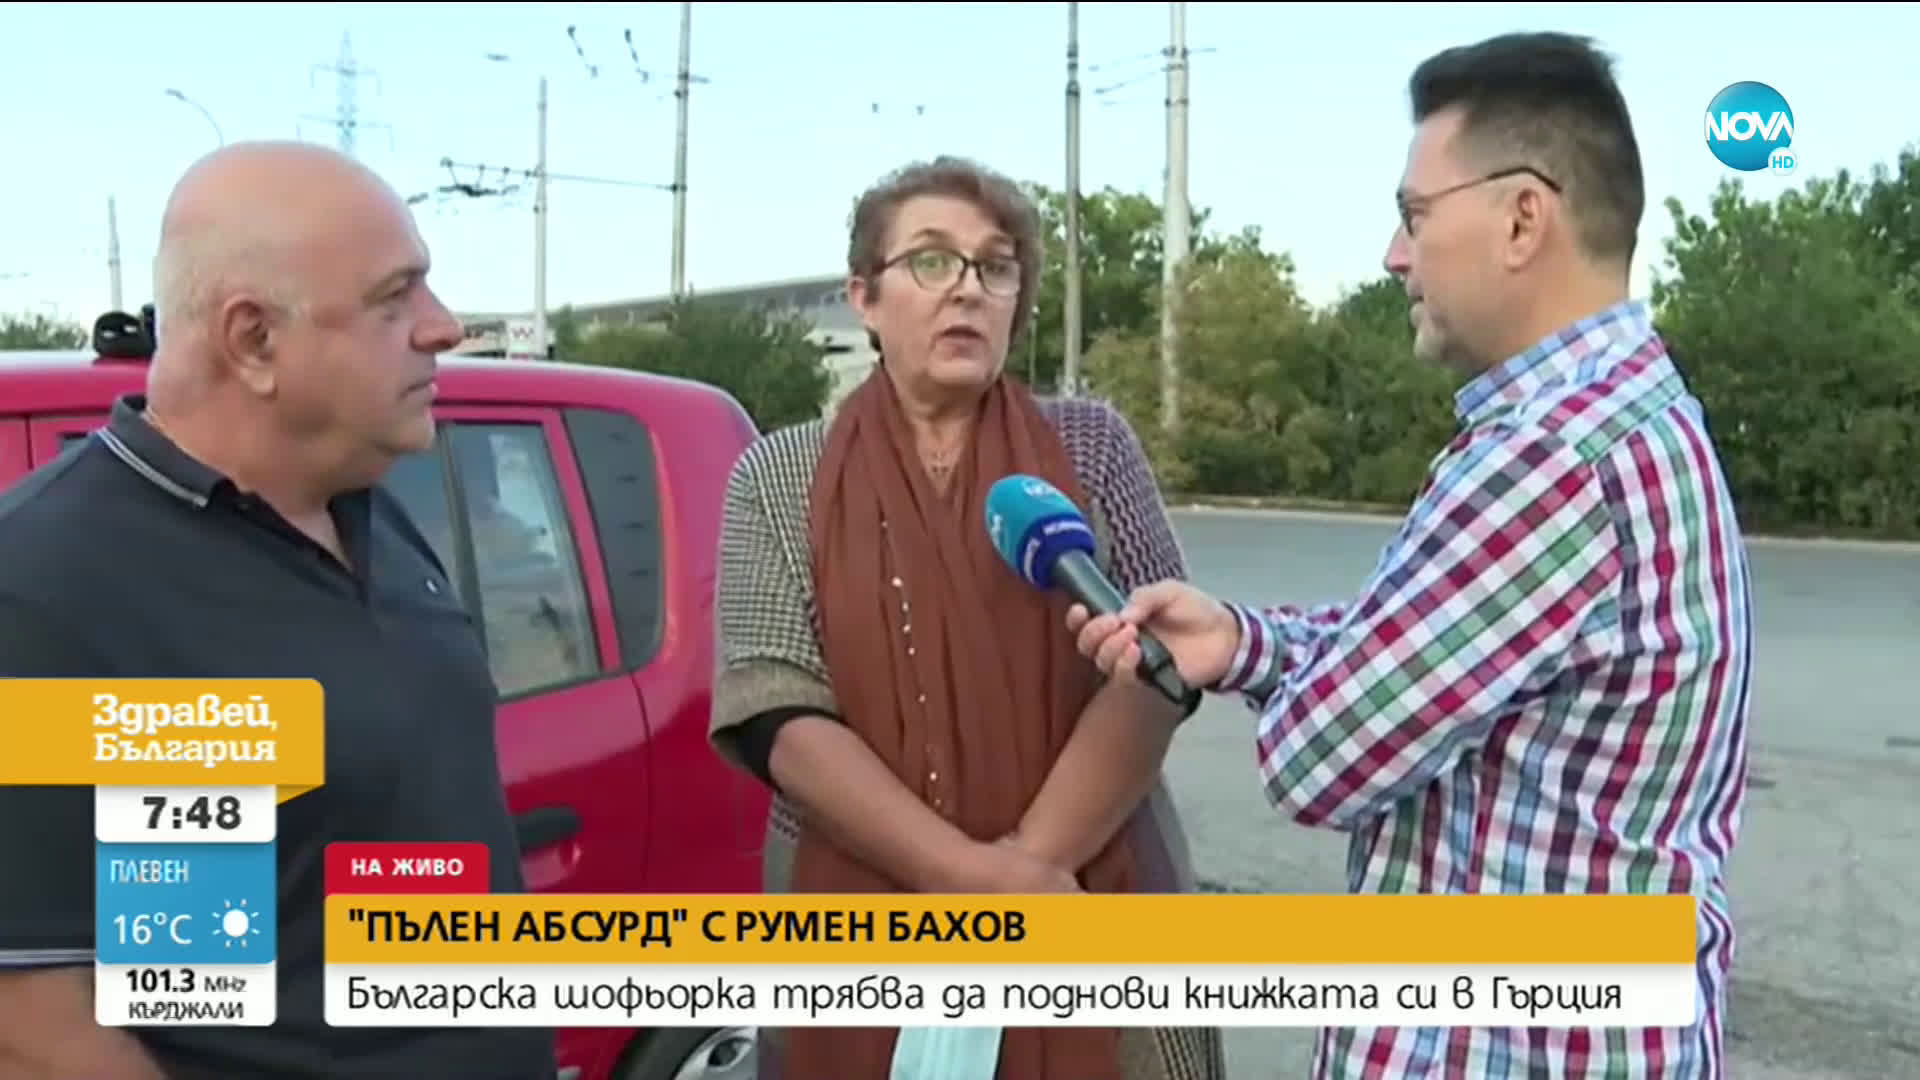 „ПЪЛЕН АБСУРД": Българска шофьорка трябва да поднови книжката си в Гърция